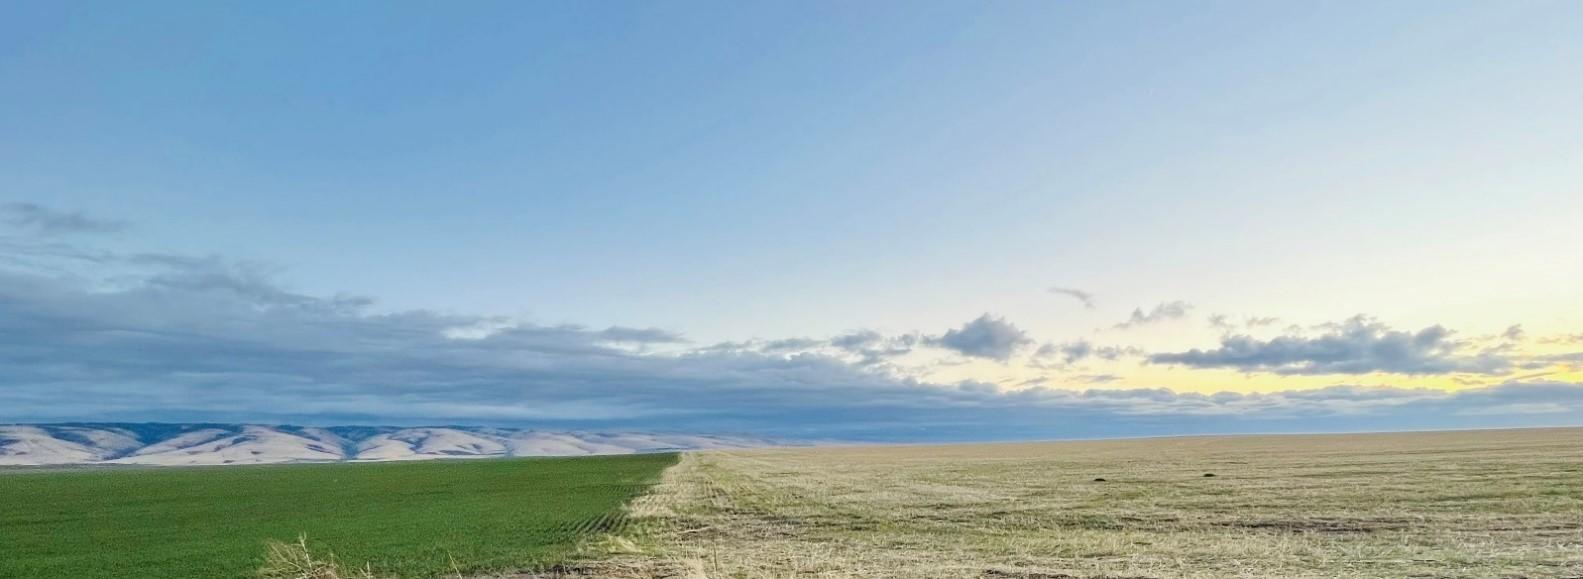 wheat field landscape